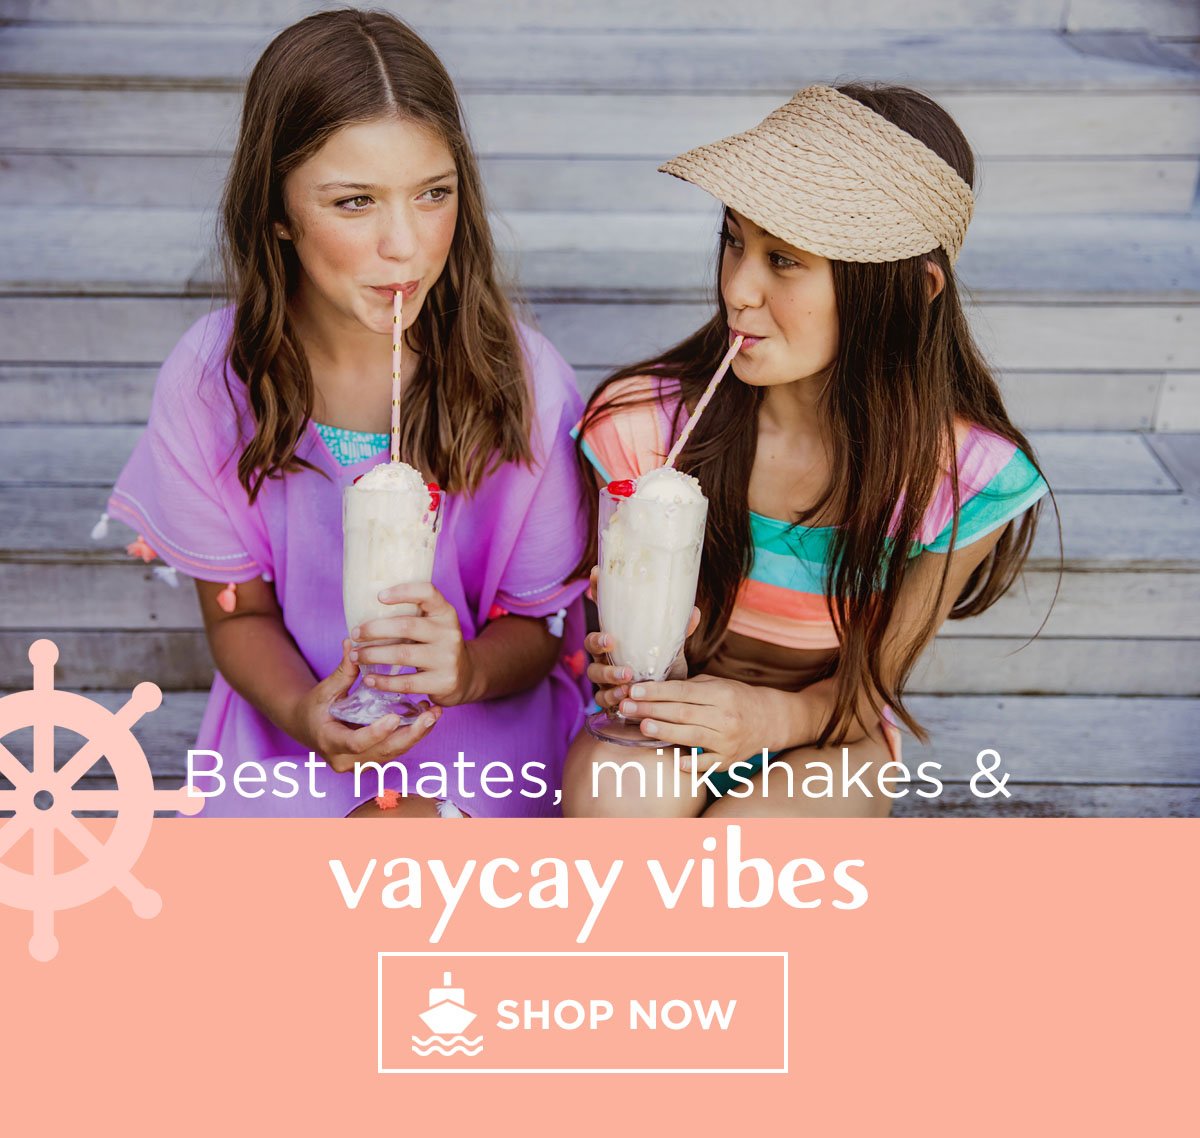 Best mates, milkshakes, and vaycay vibes